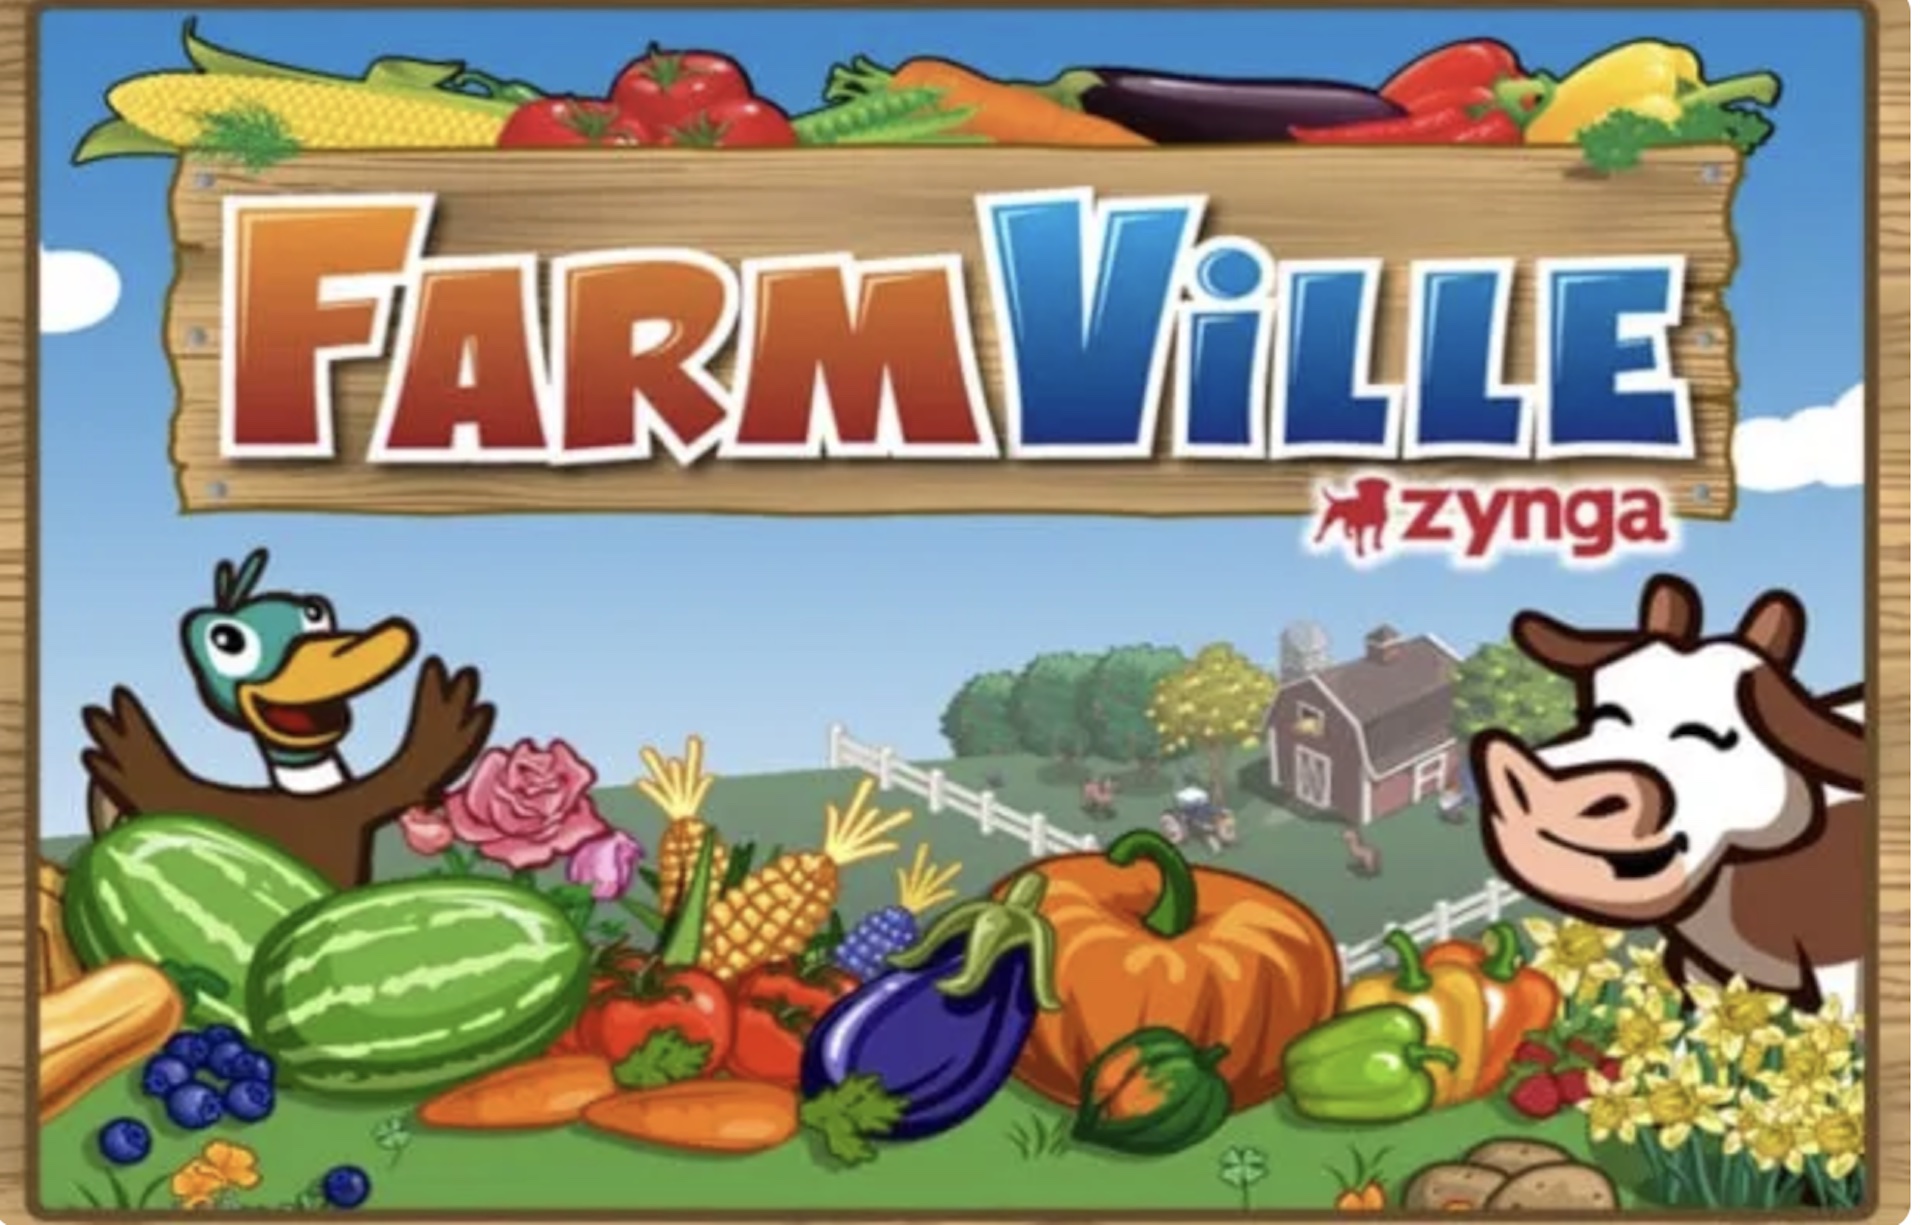 farmville-logo